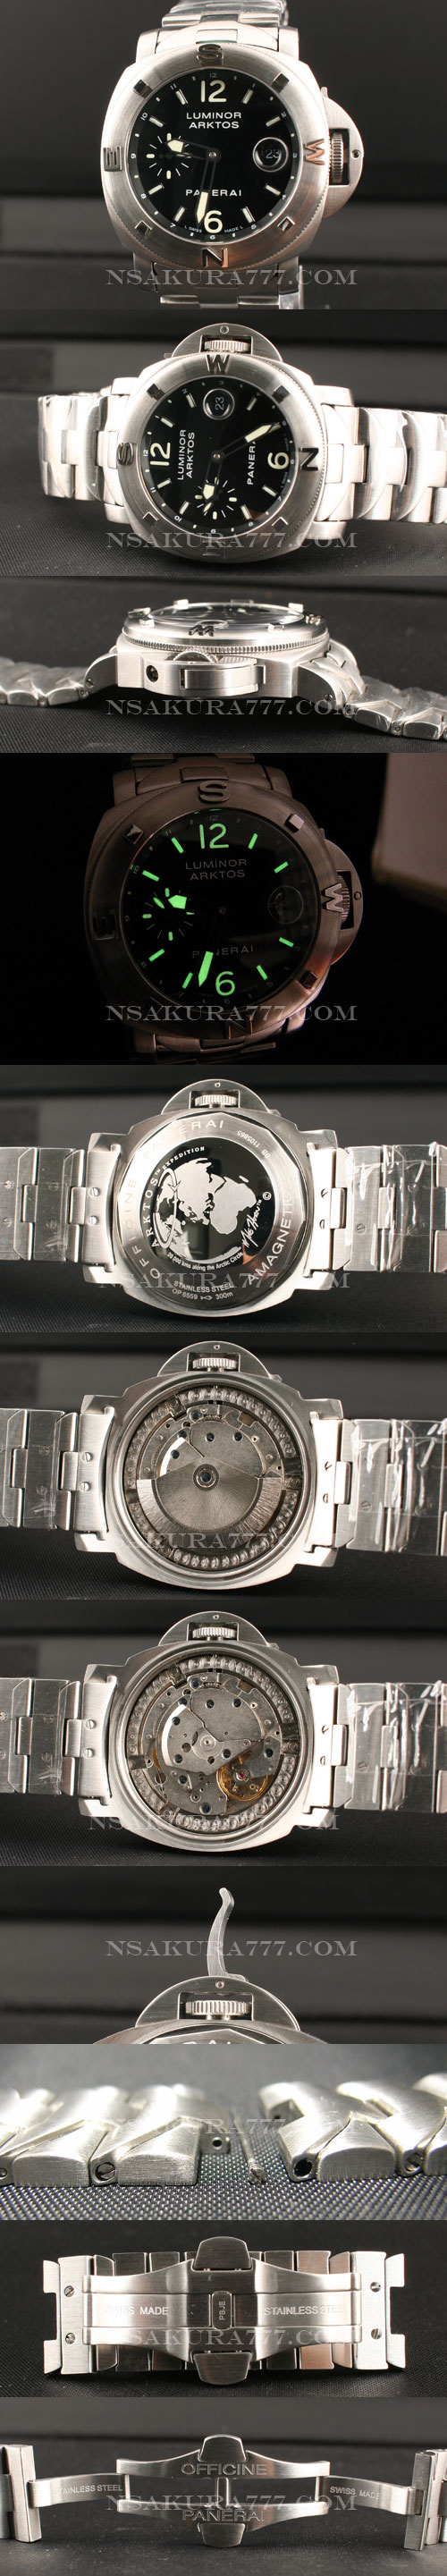 スーパーコピー時計パネライ アークトス世界限定500本 - ウインドウを閉じる